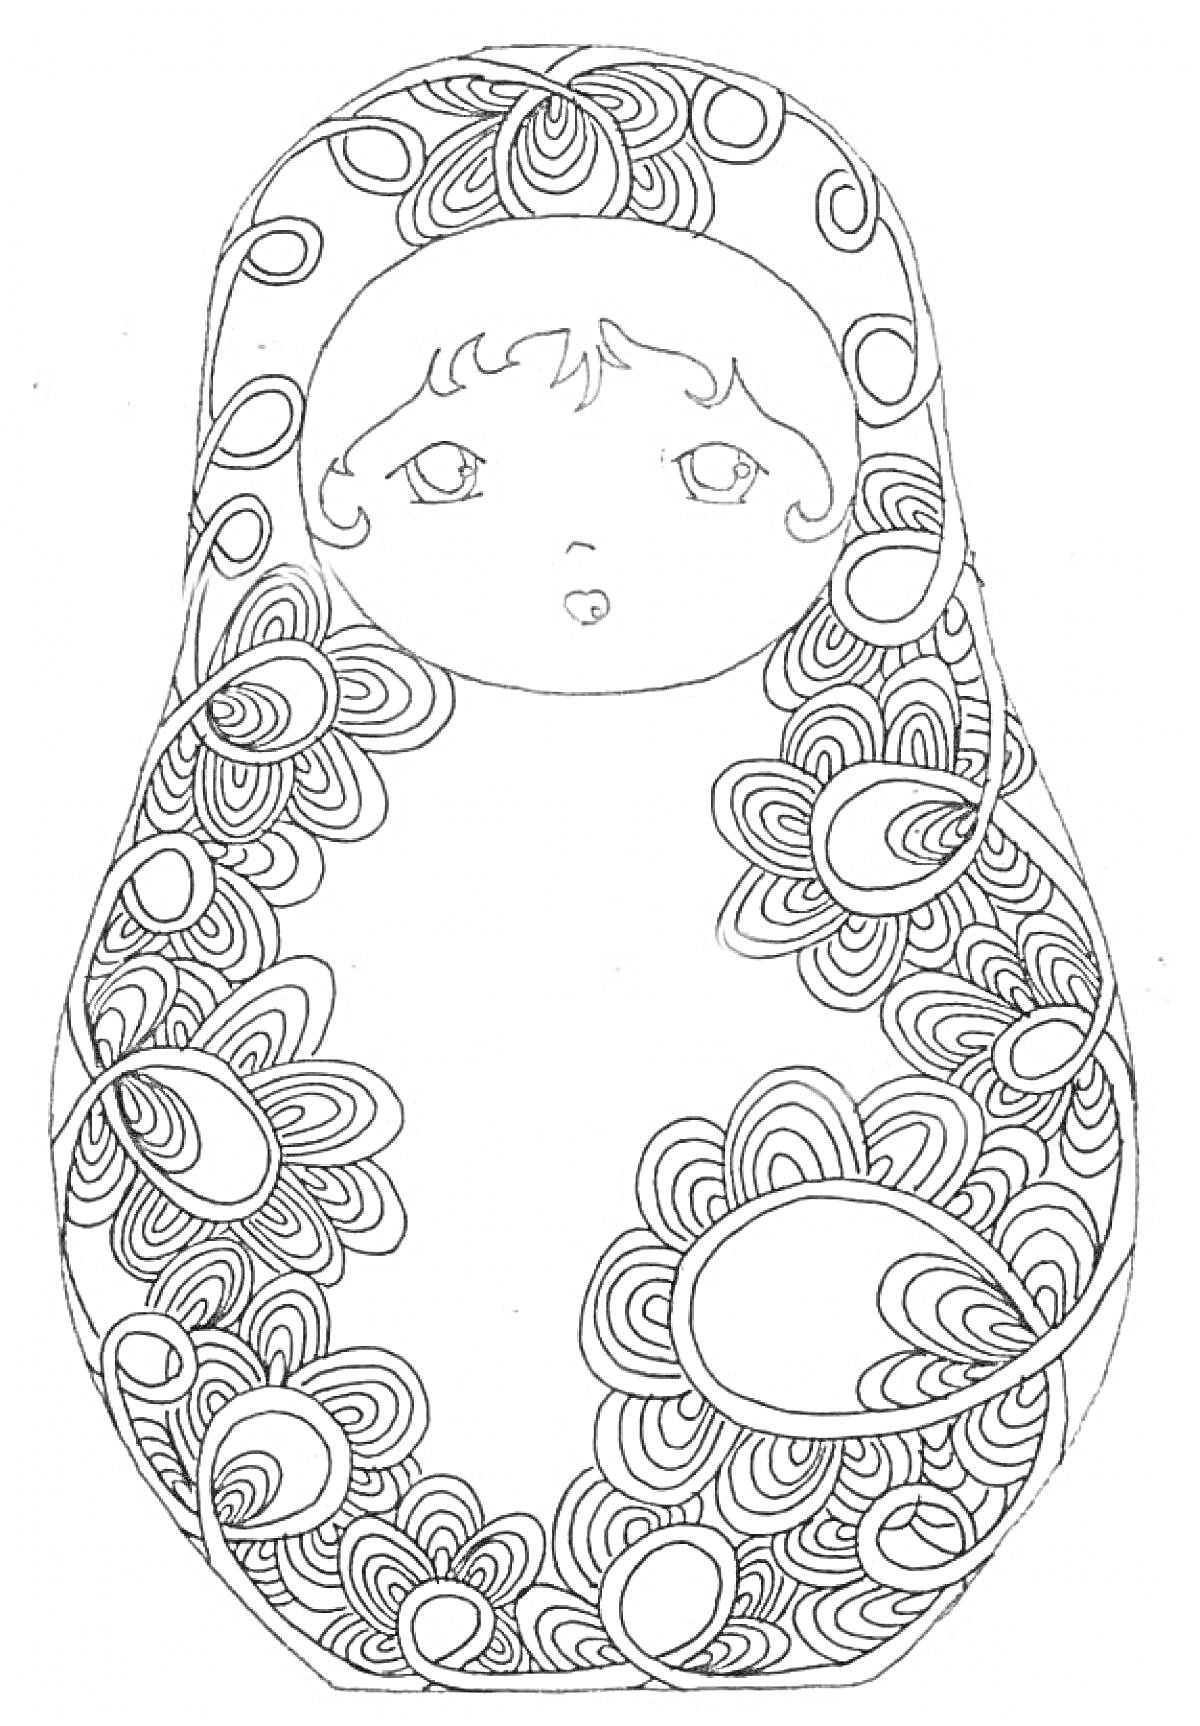 Раскраска Матрешка с цветочными узорами, крупные глаза, волнистые волосы